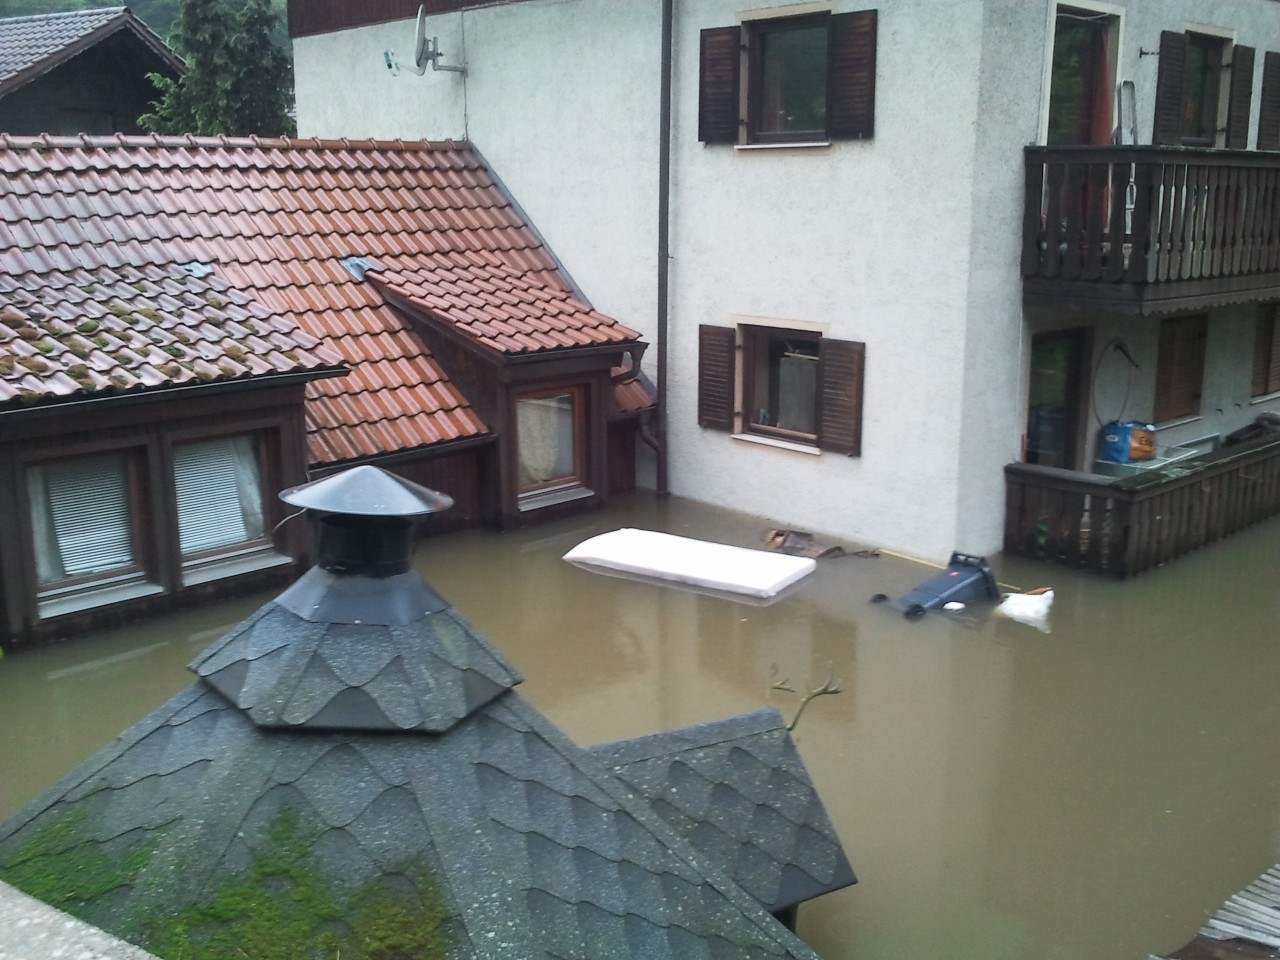 Mit knapp elf Metern erreichte das Hochwasser in Passau ein historisches Ausmaß. Die Wohnung der Cremers wurde fast komplett überschwemmt.